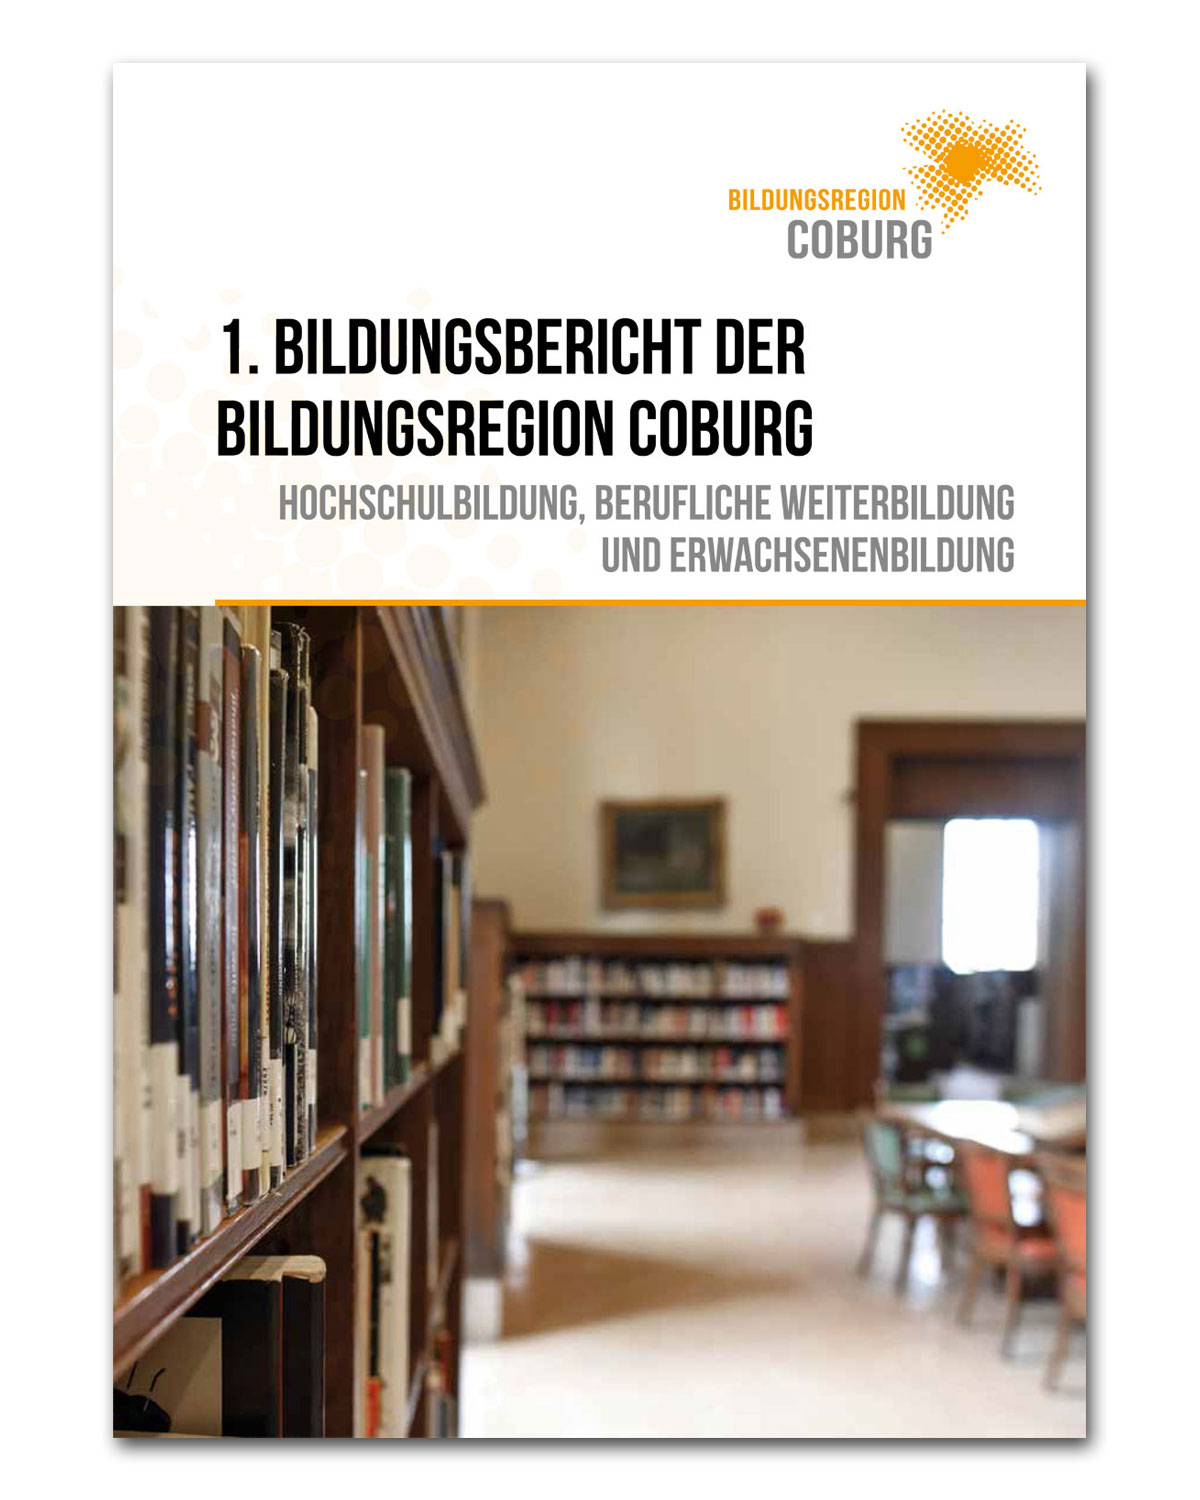 1. Bildungsbericht der Bildungsregion Coburg mit dem Untertitel "Hochschulbildung, berufliche Weiterbildung und Erwachsenenbildung." Das Deckblatt zeigt das Bücherregal einer Bibliothek.